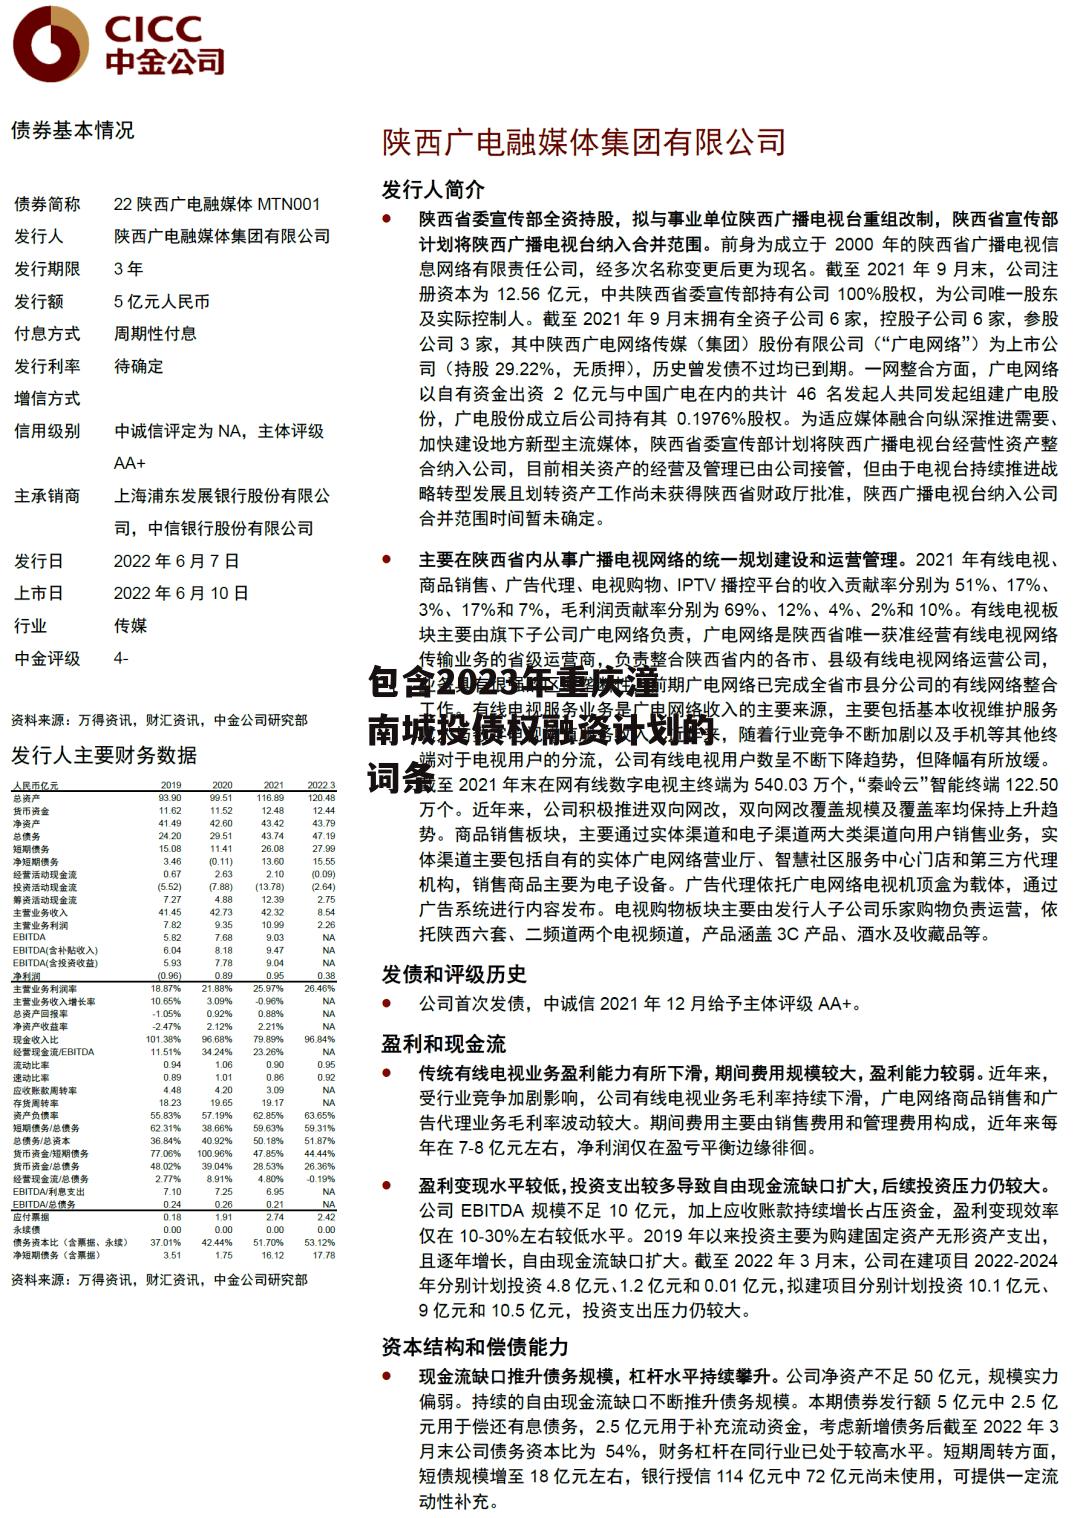 包含2023年重庆潼南城投债权融资计划的词条